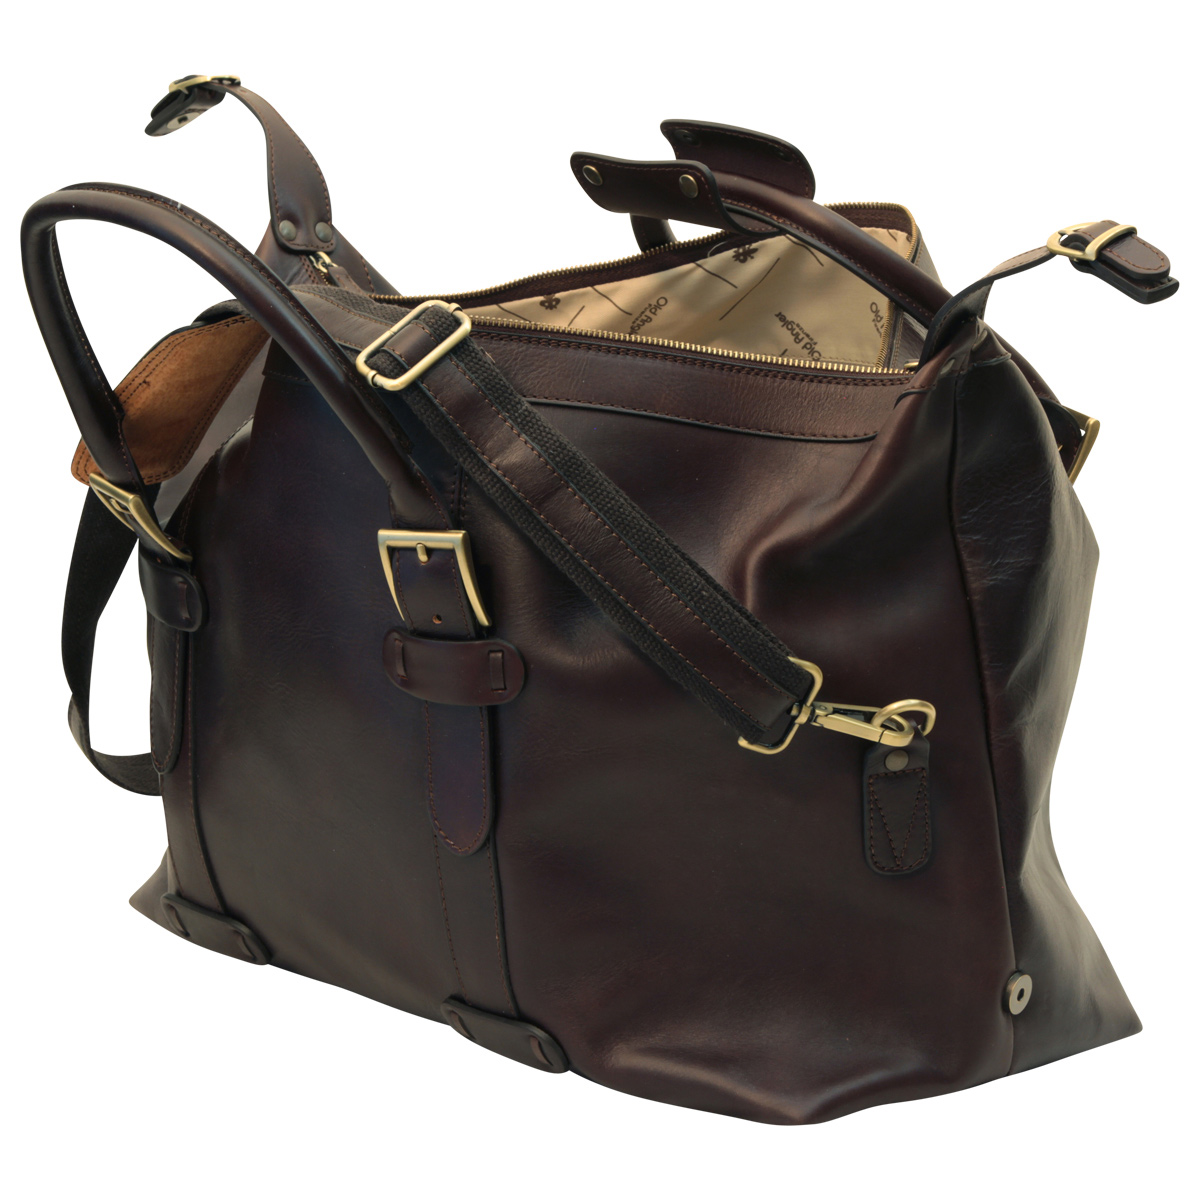 Cowhide leather Travel Bag - Dark Brown | 410689TM UK | Old Angler Firenze